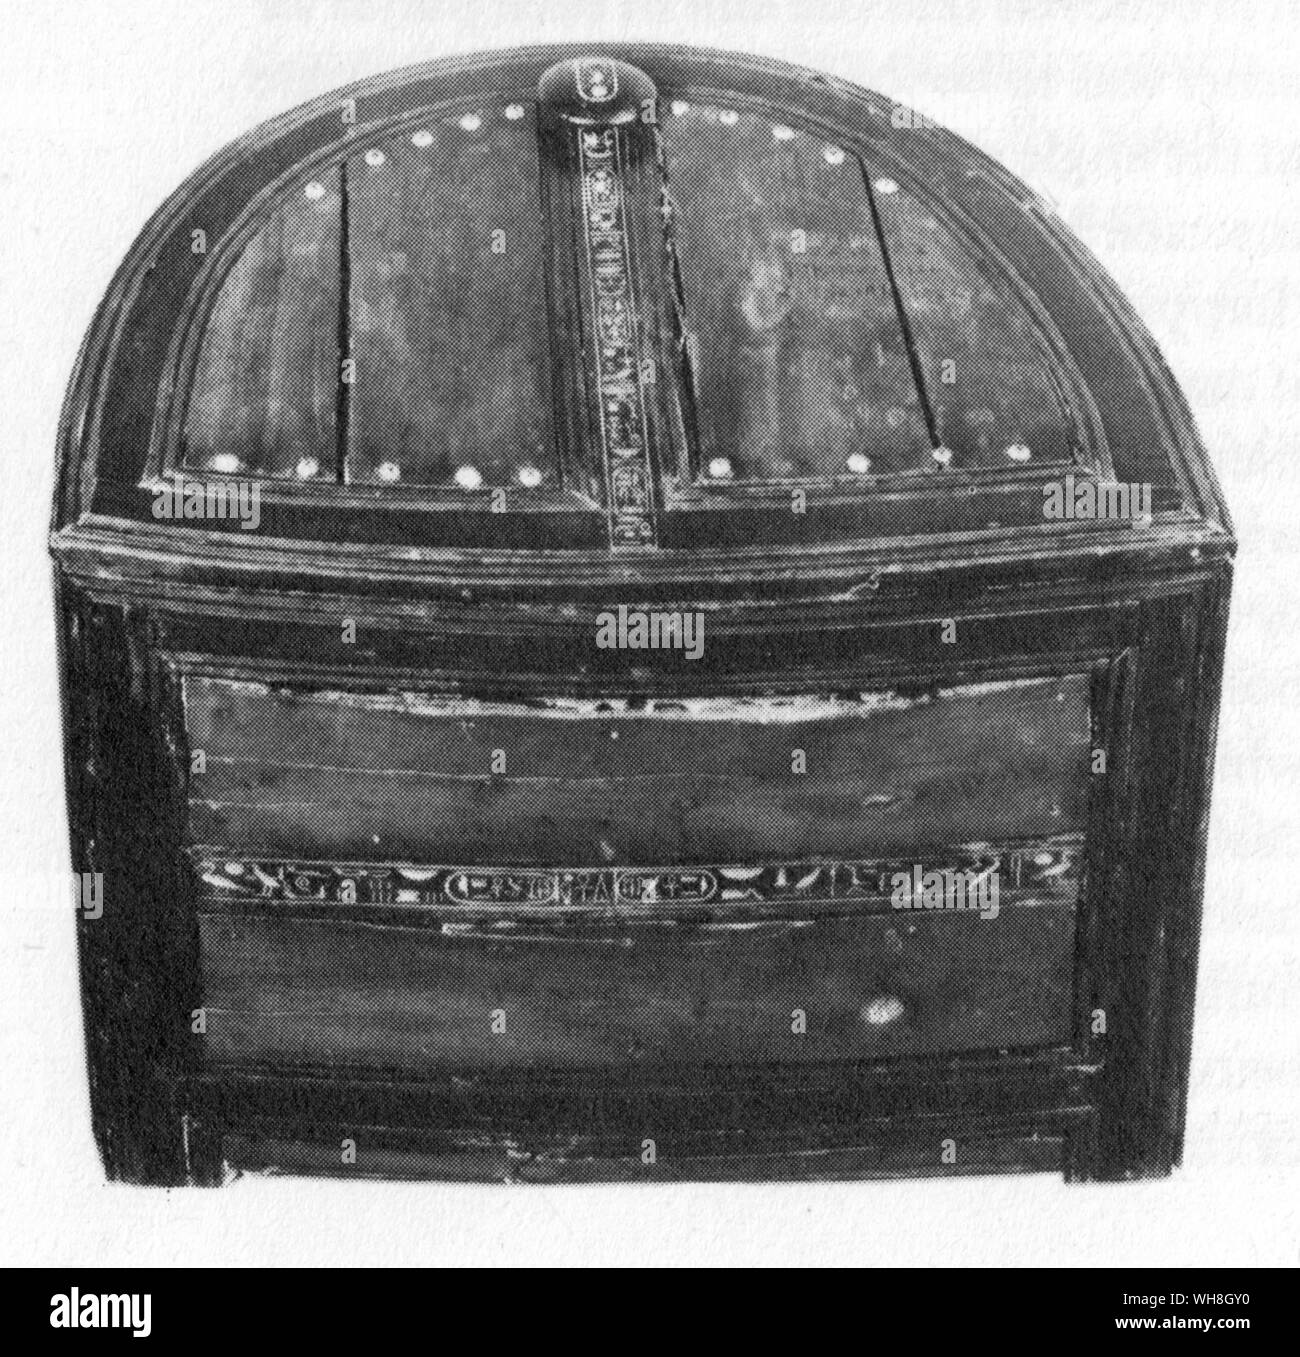 Bow fronted Box im Grab von Tutanchamun gefunden. Die Schätze von Tutanchamun, der Katalog zur Ausstellung von I E S Edwards, Seite 97. Stockfoto